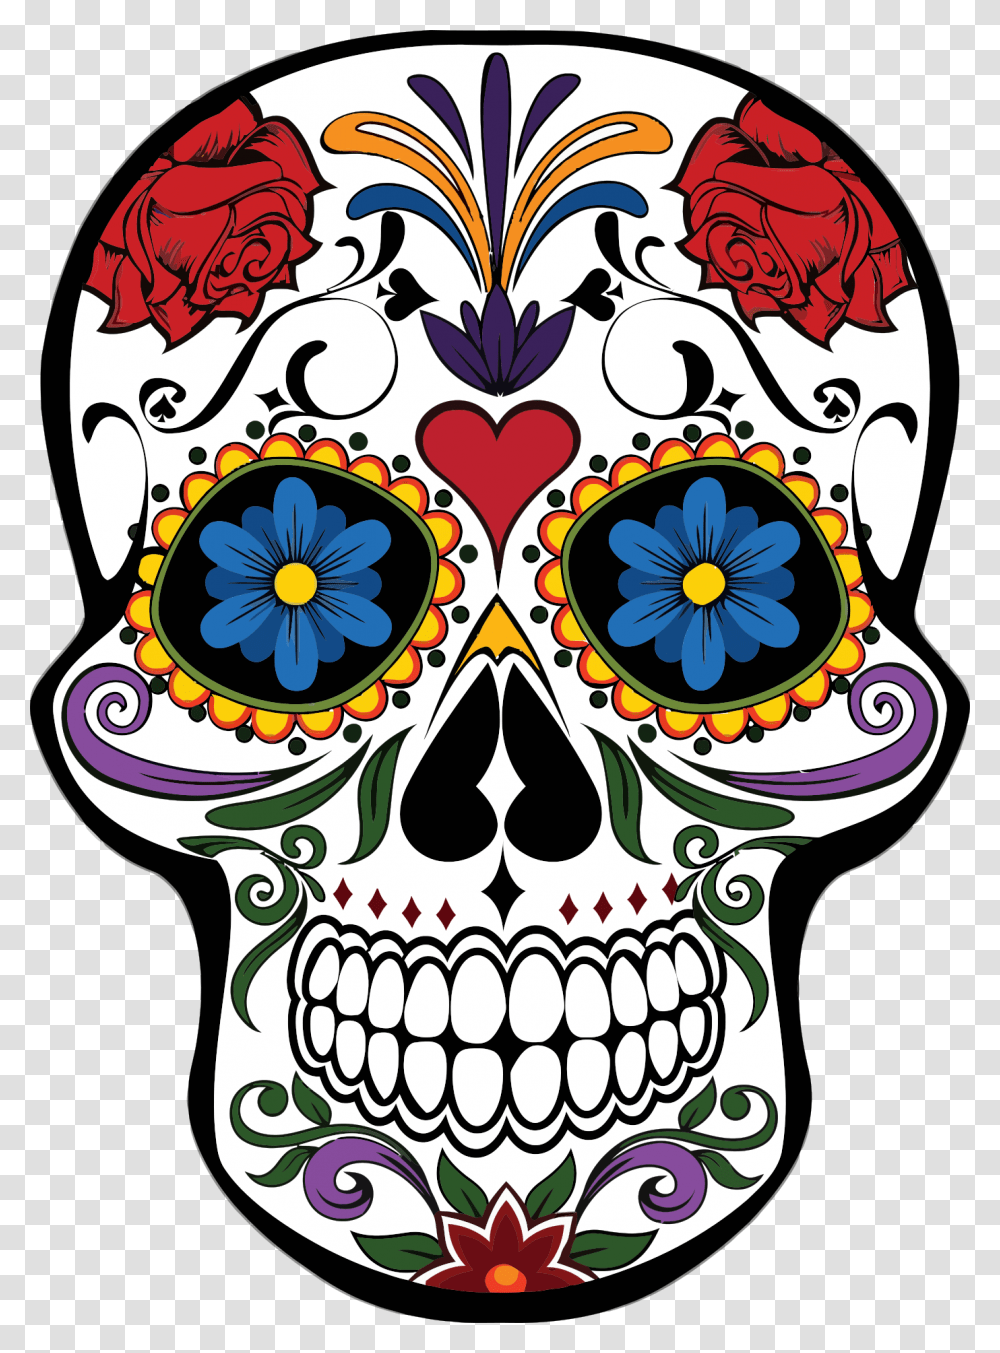 Mardi Flower Skull Calavera Gras Design Floral Clipart Day Of The Dead Skull, Floral Design, Pattern, Doodle Transparent Png